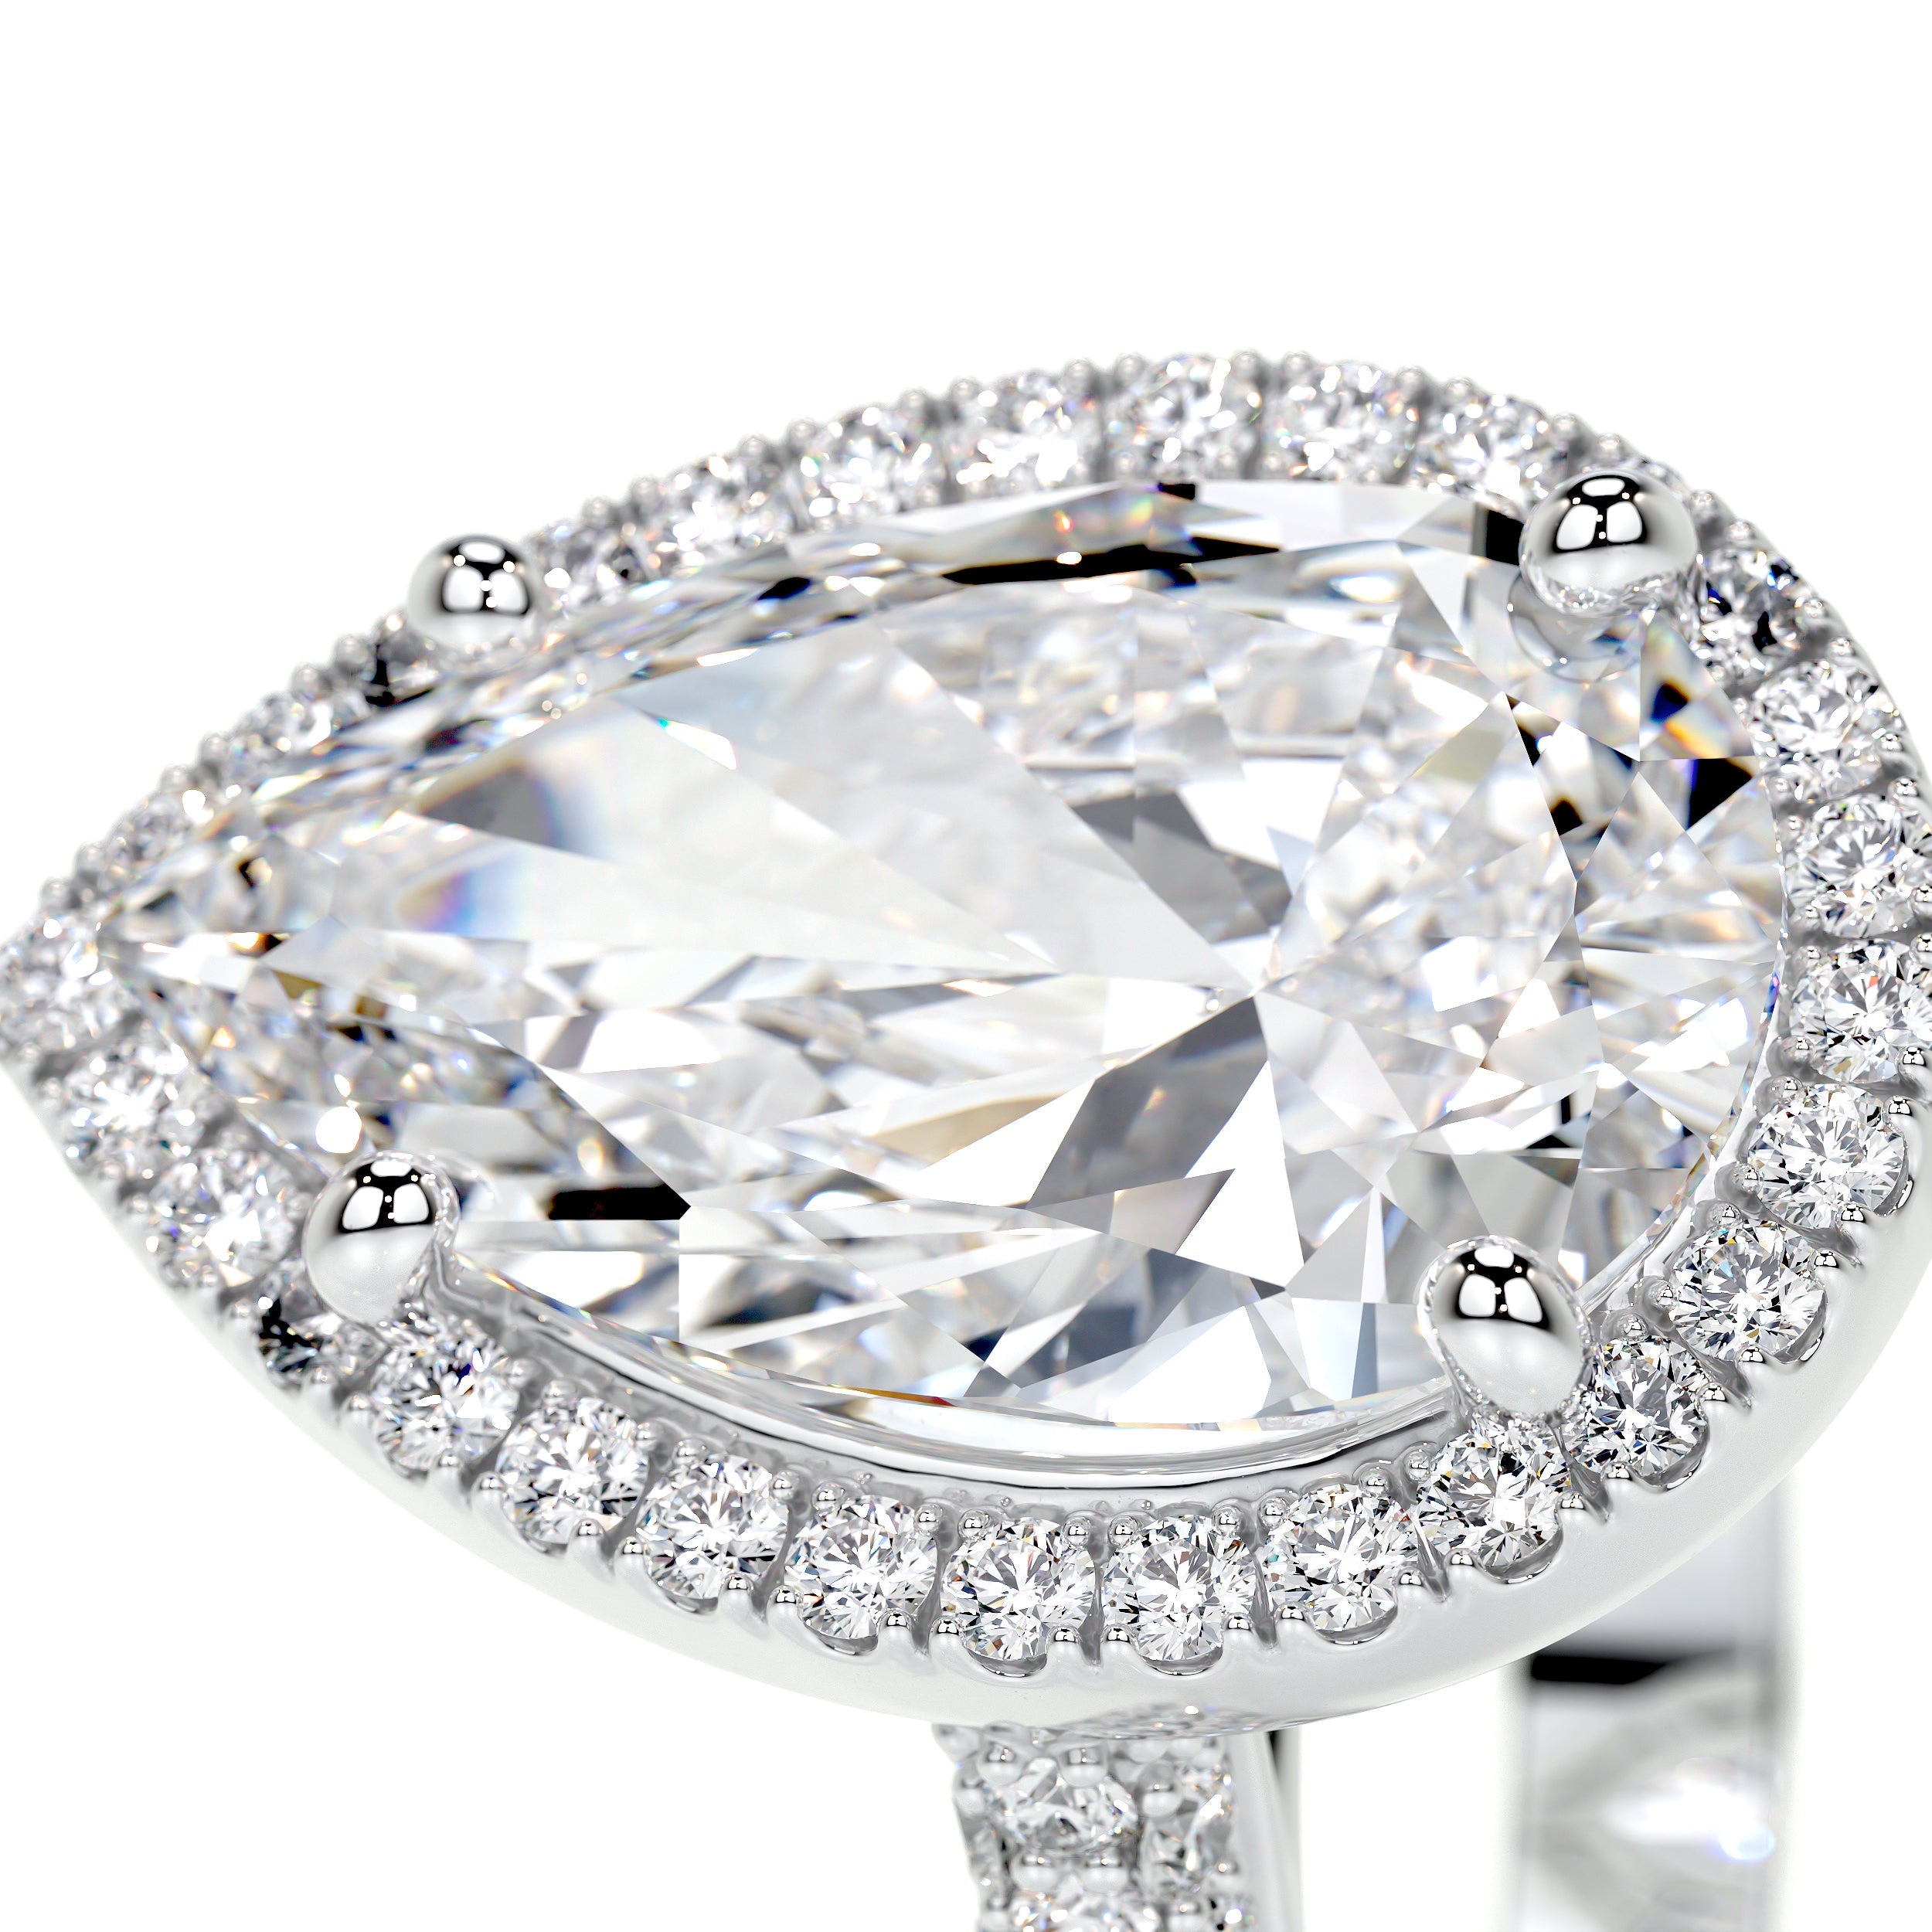 Margarita Lab Grown Diamond Ring   (3.5 Carat) -14K White Gold